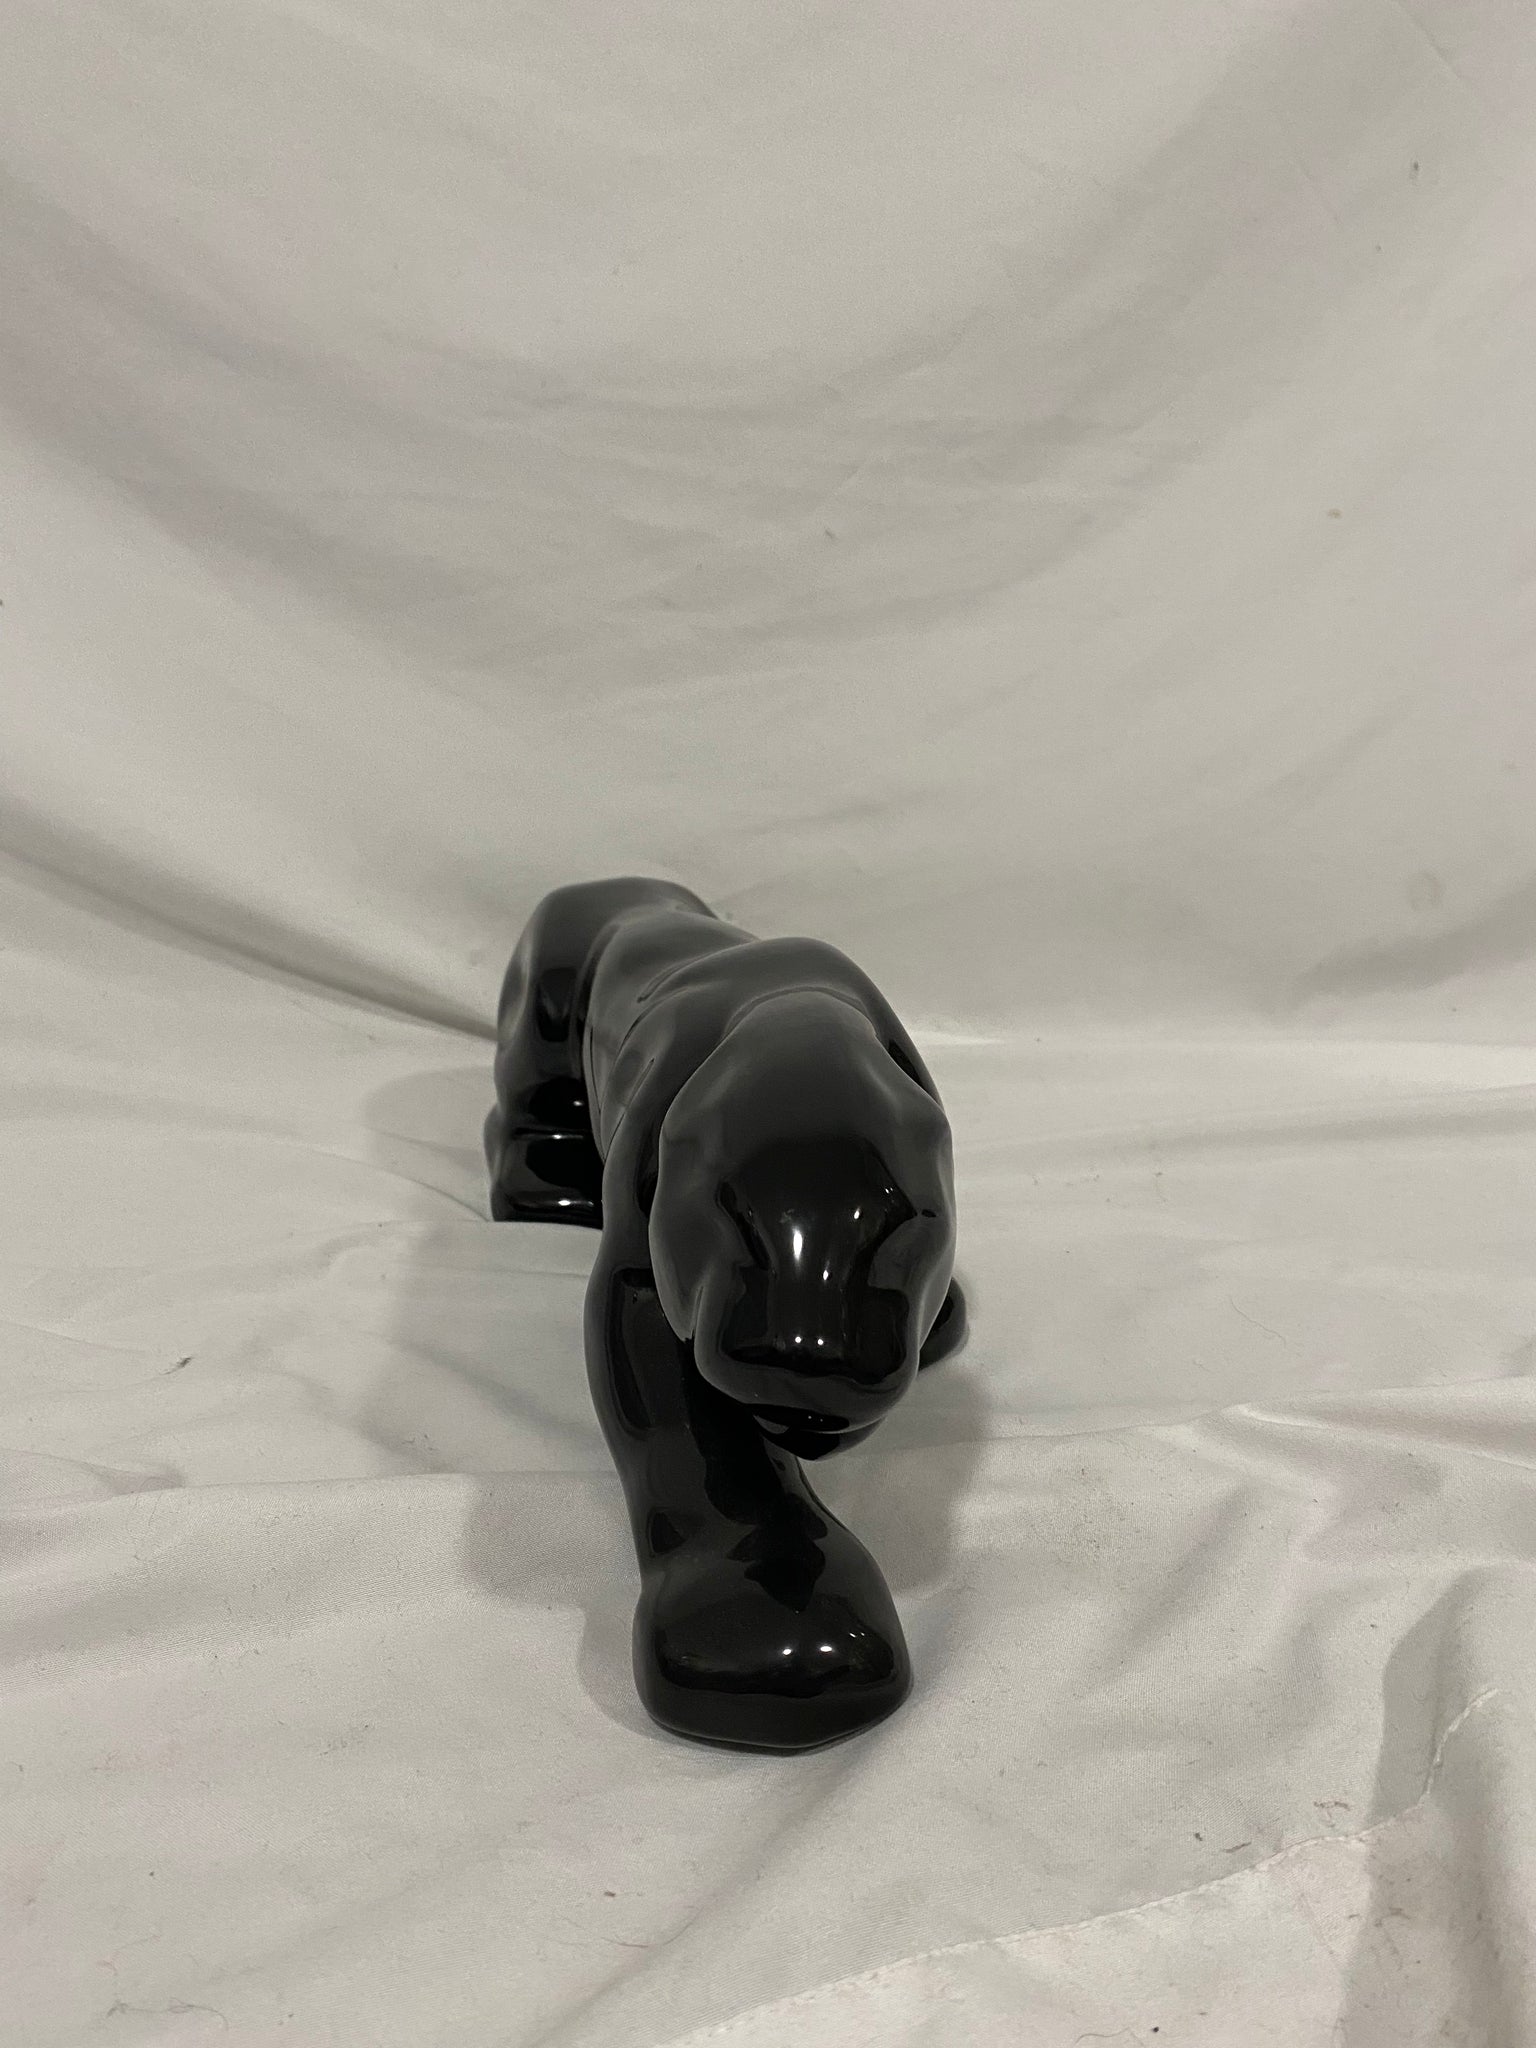 Black ceramic panther